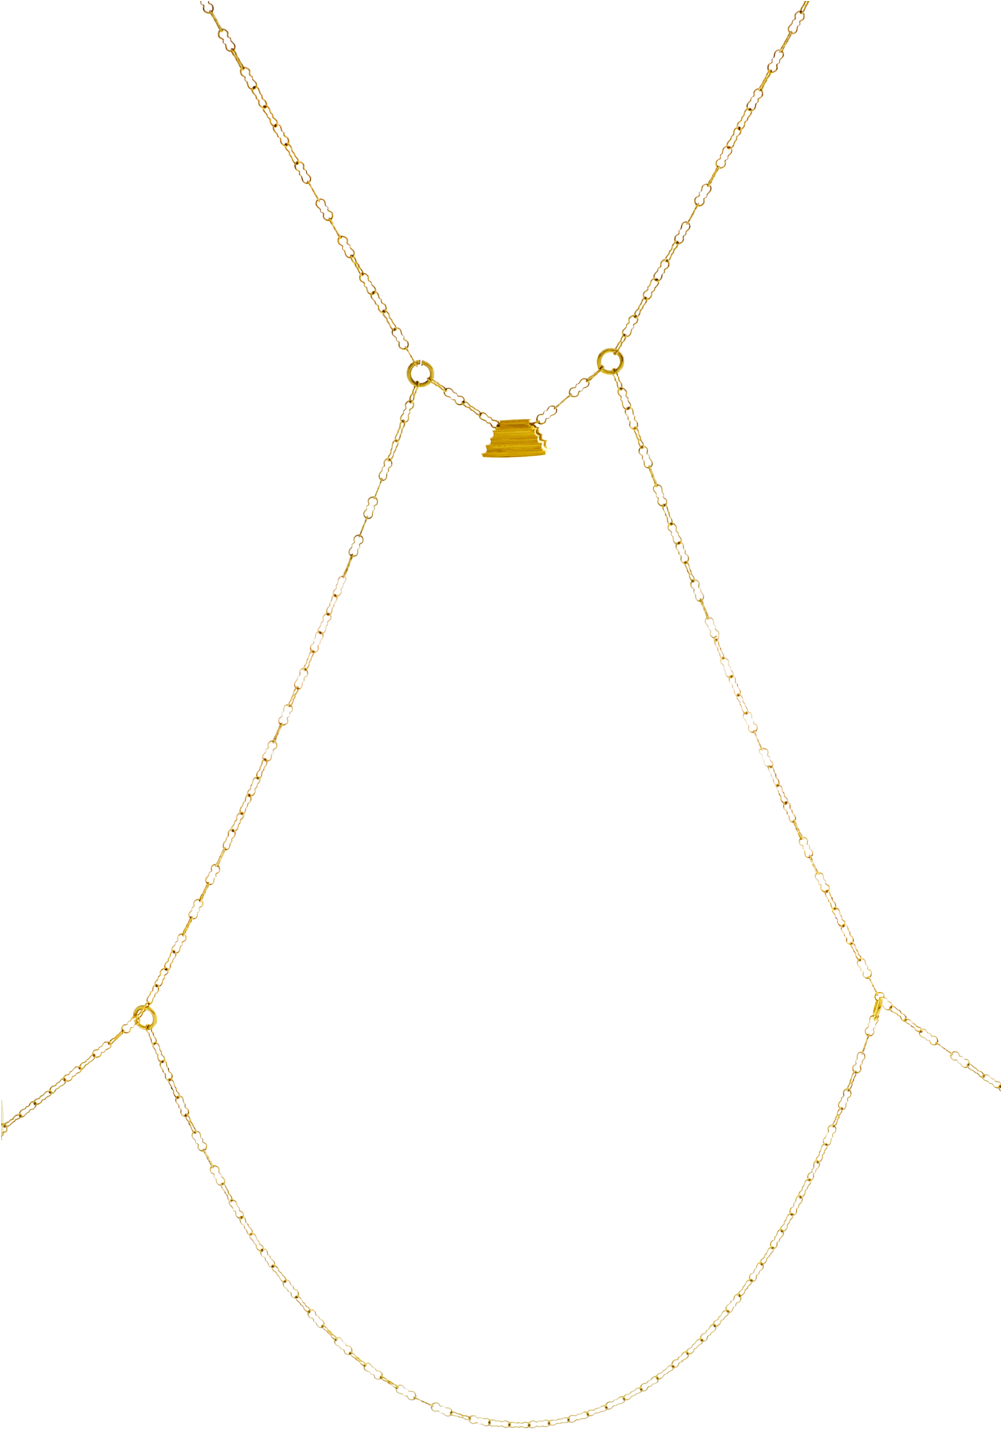 Aldea Body Chain In 14k Gold-filled Chain - Aldea Body Chain In 14k Gold-filled Chain (1000x1495)